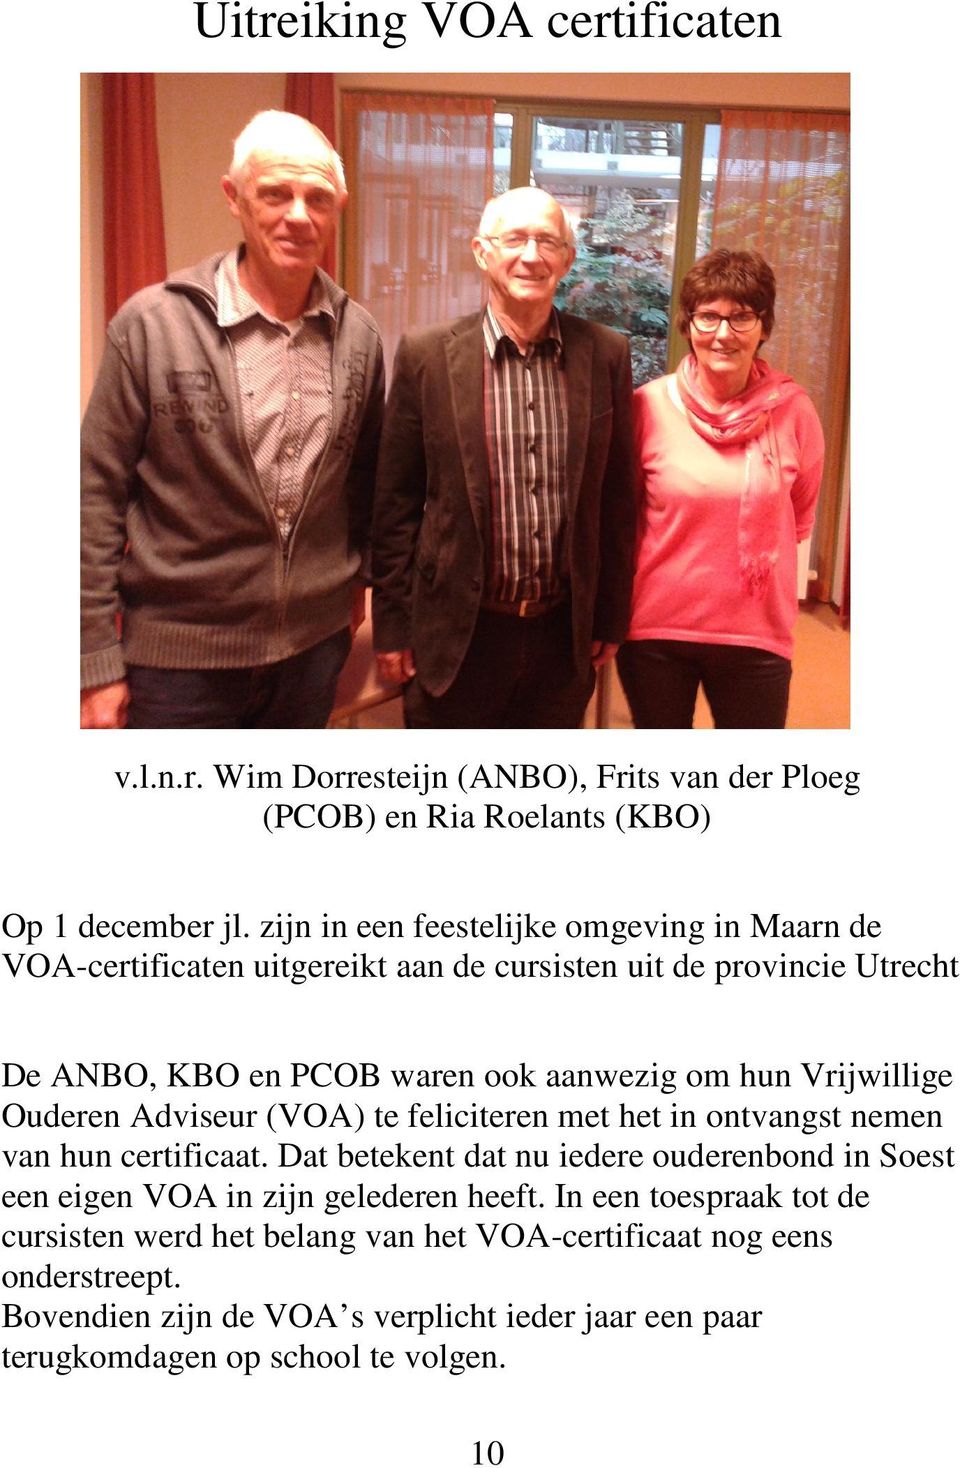 Vrijwillige Ouderen Adviseur (VOA) te feliciteren met het in ontvangst nemen van hun certificaat.